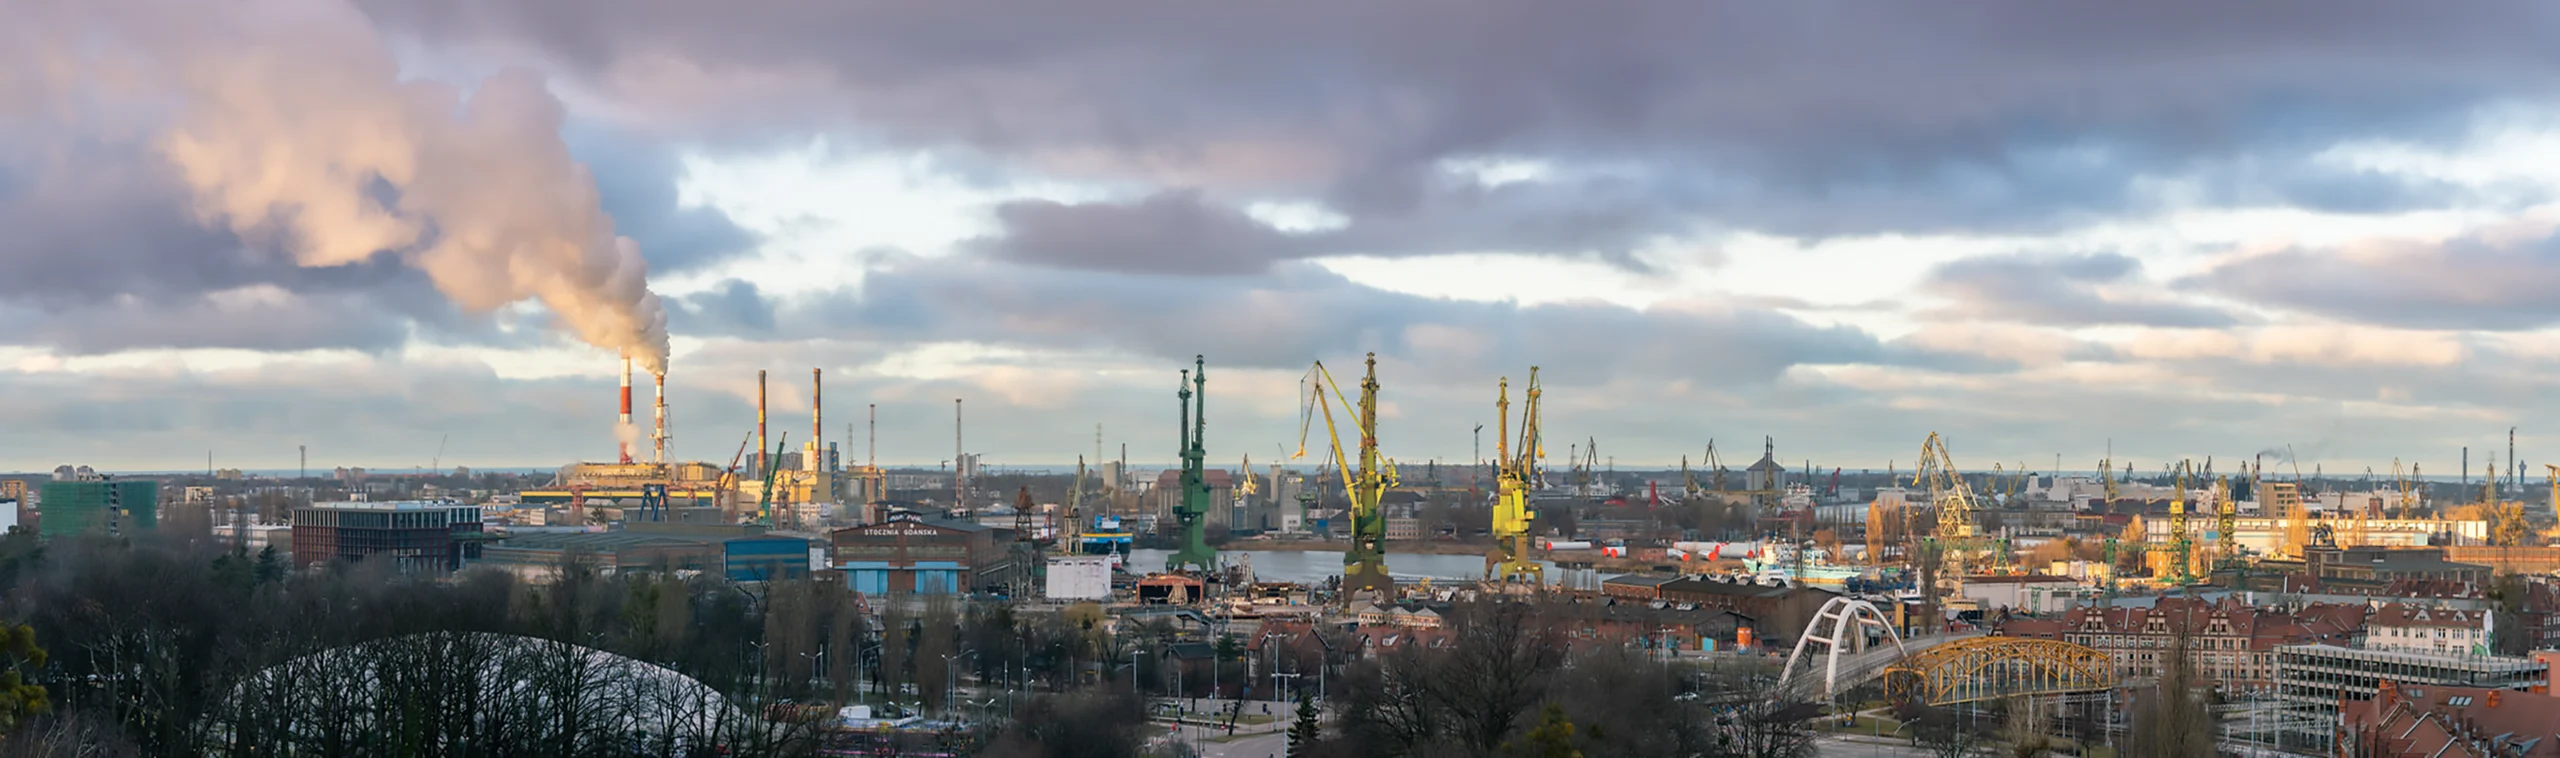 Zdjęcia panoramiczne Gdynia, Gdańsk